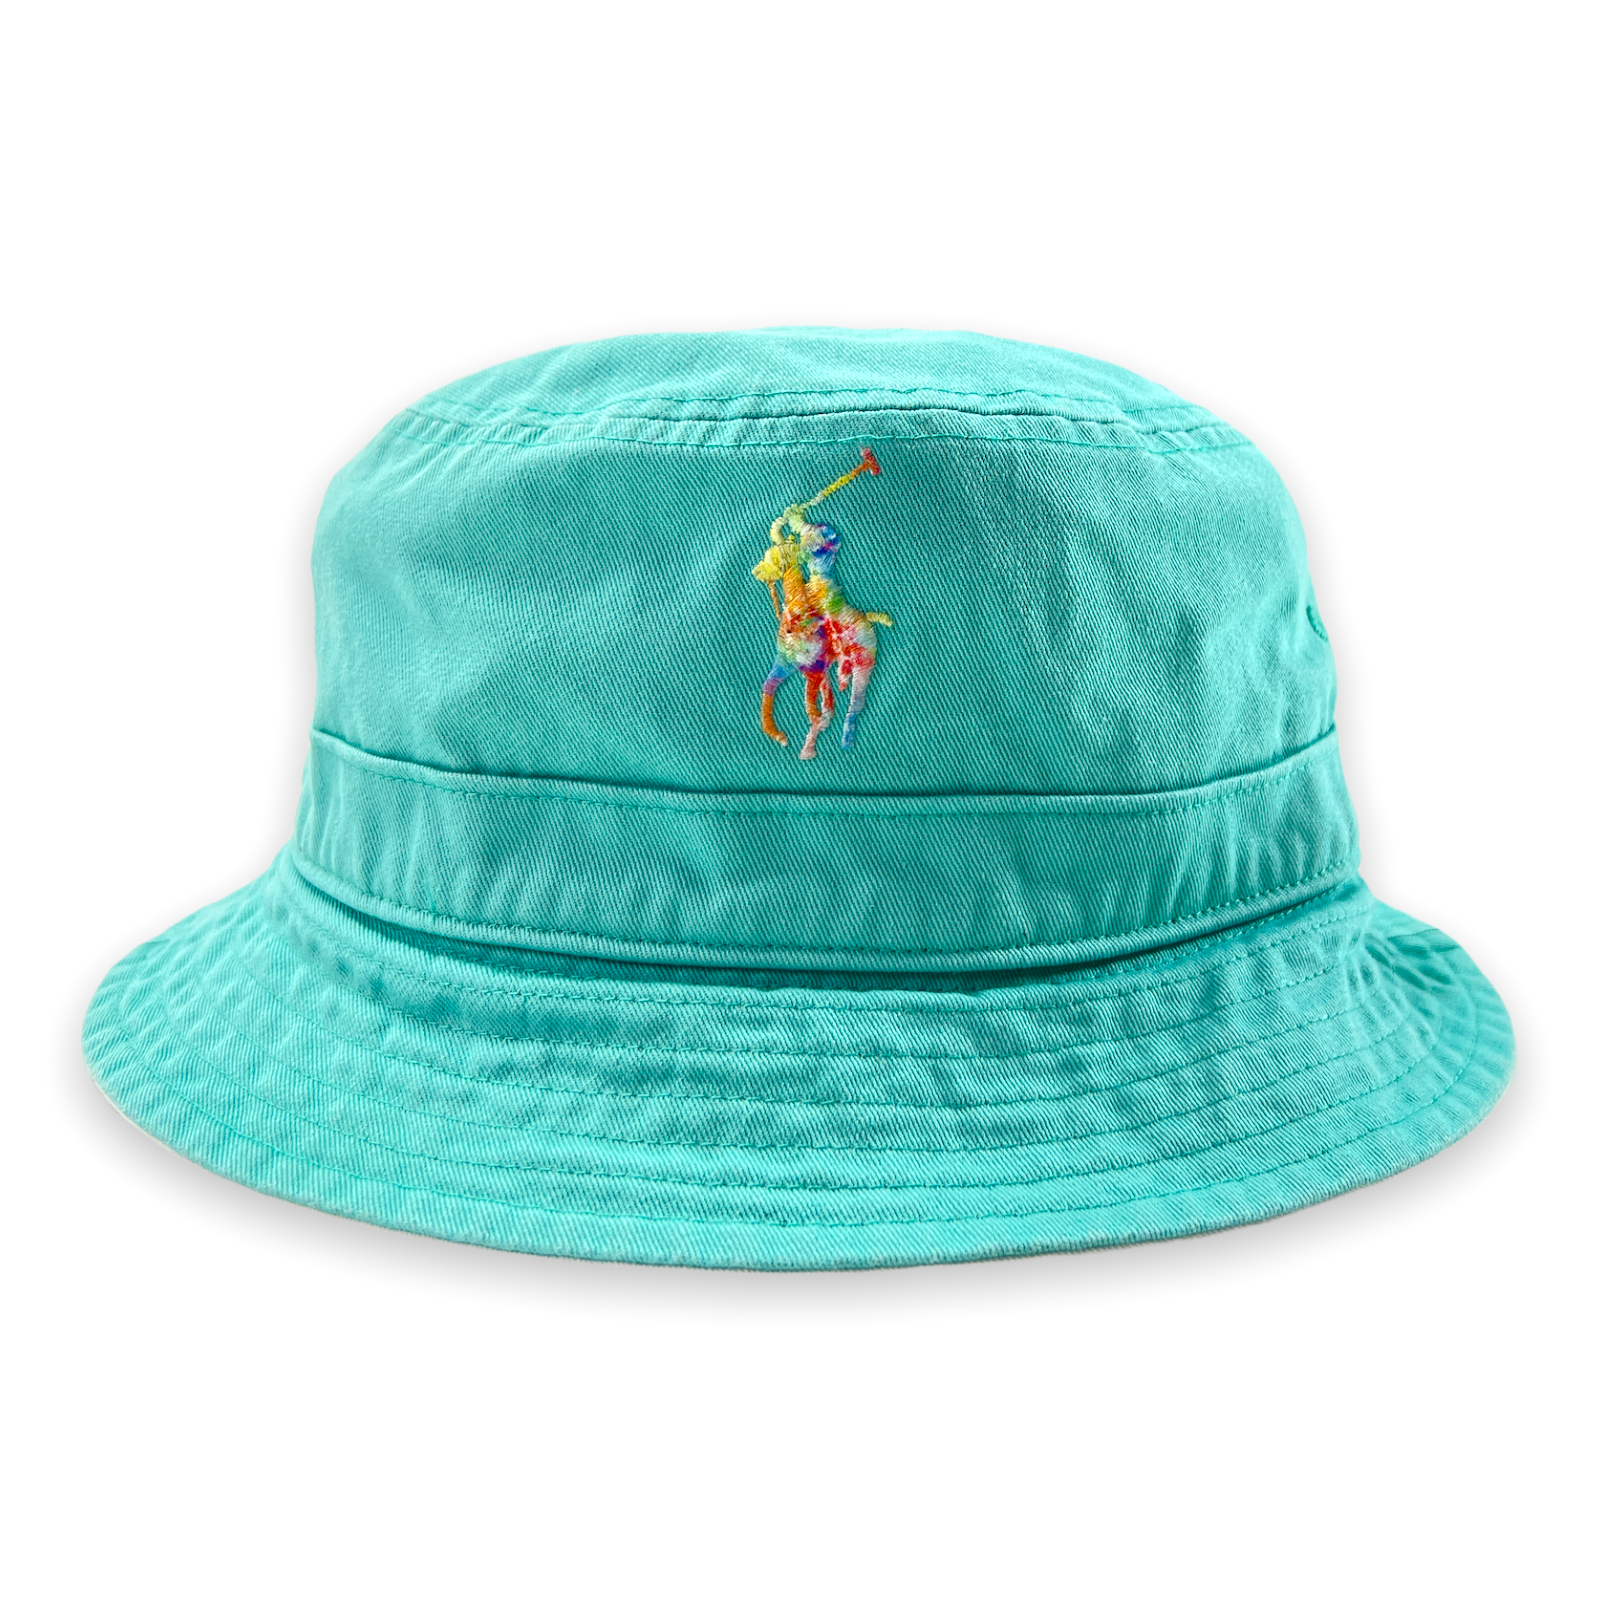 Polo Ralph Lauren Mens Bucket Hat Seafoam Color 100% Cotton New Authentic